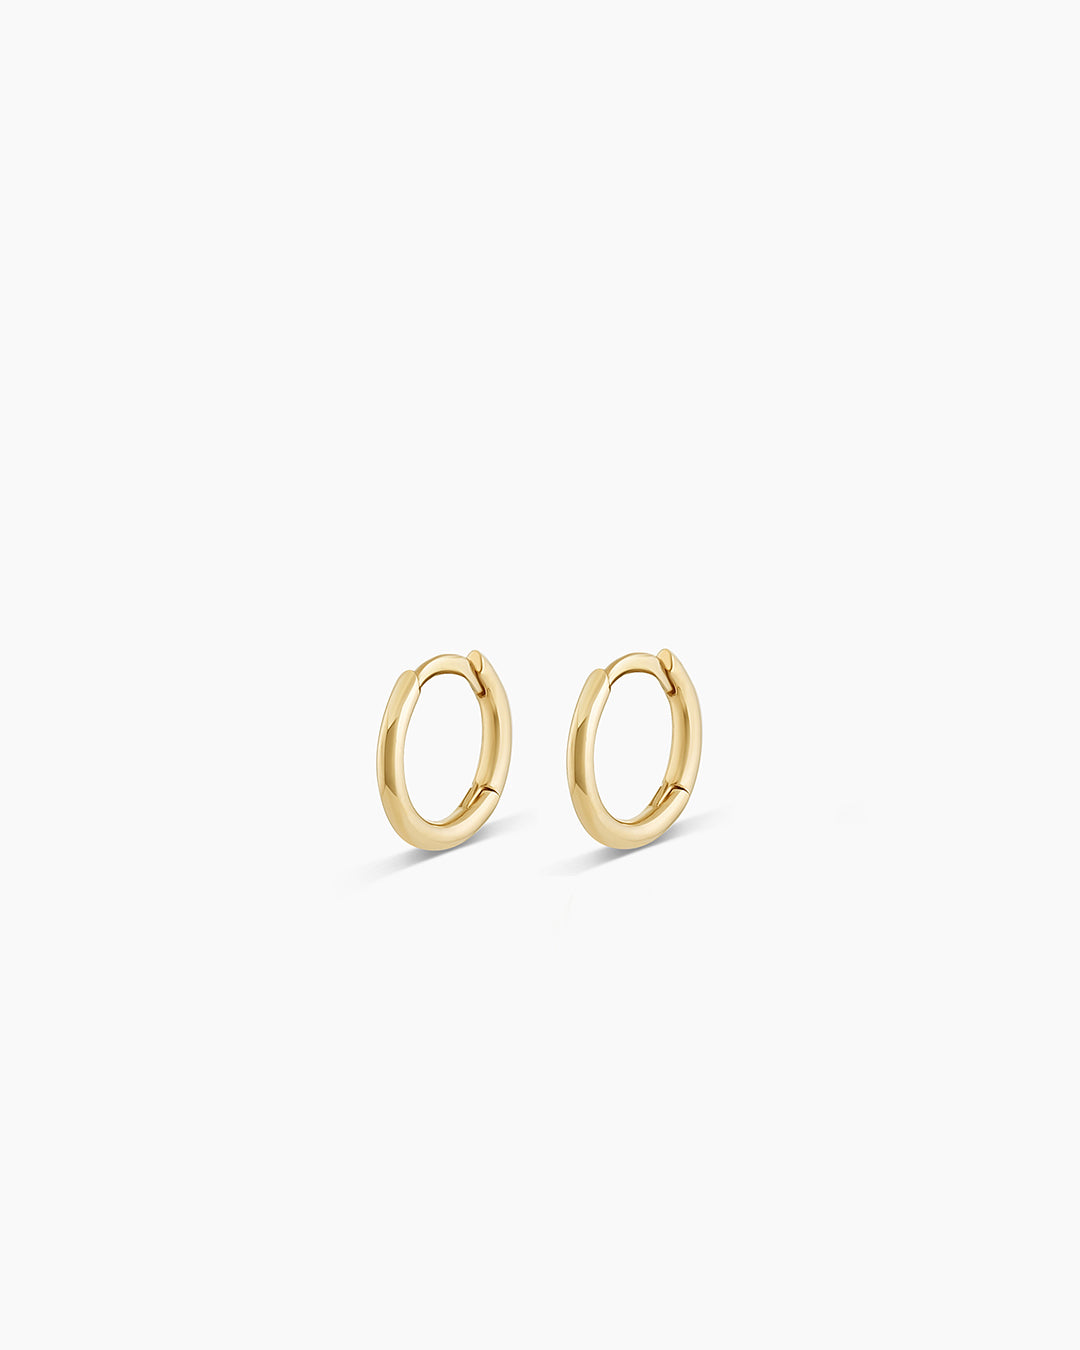 Buy Stunning Gold Danglers One Gram Gold Earrings for Women